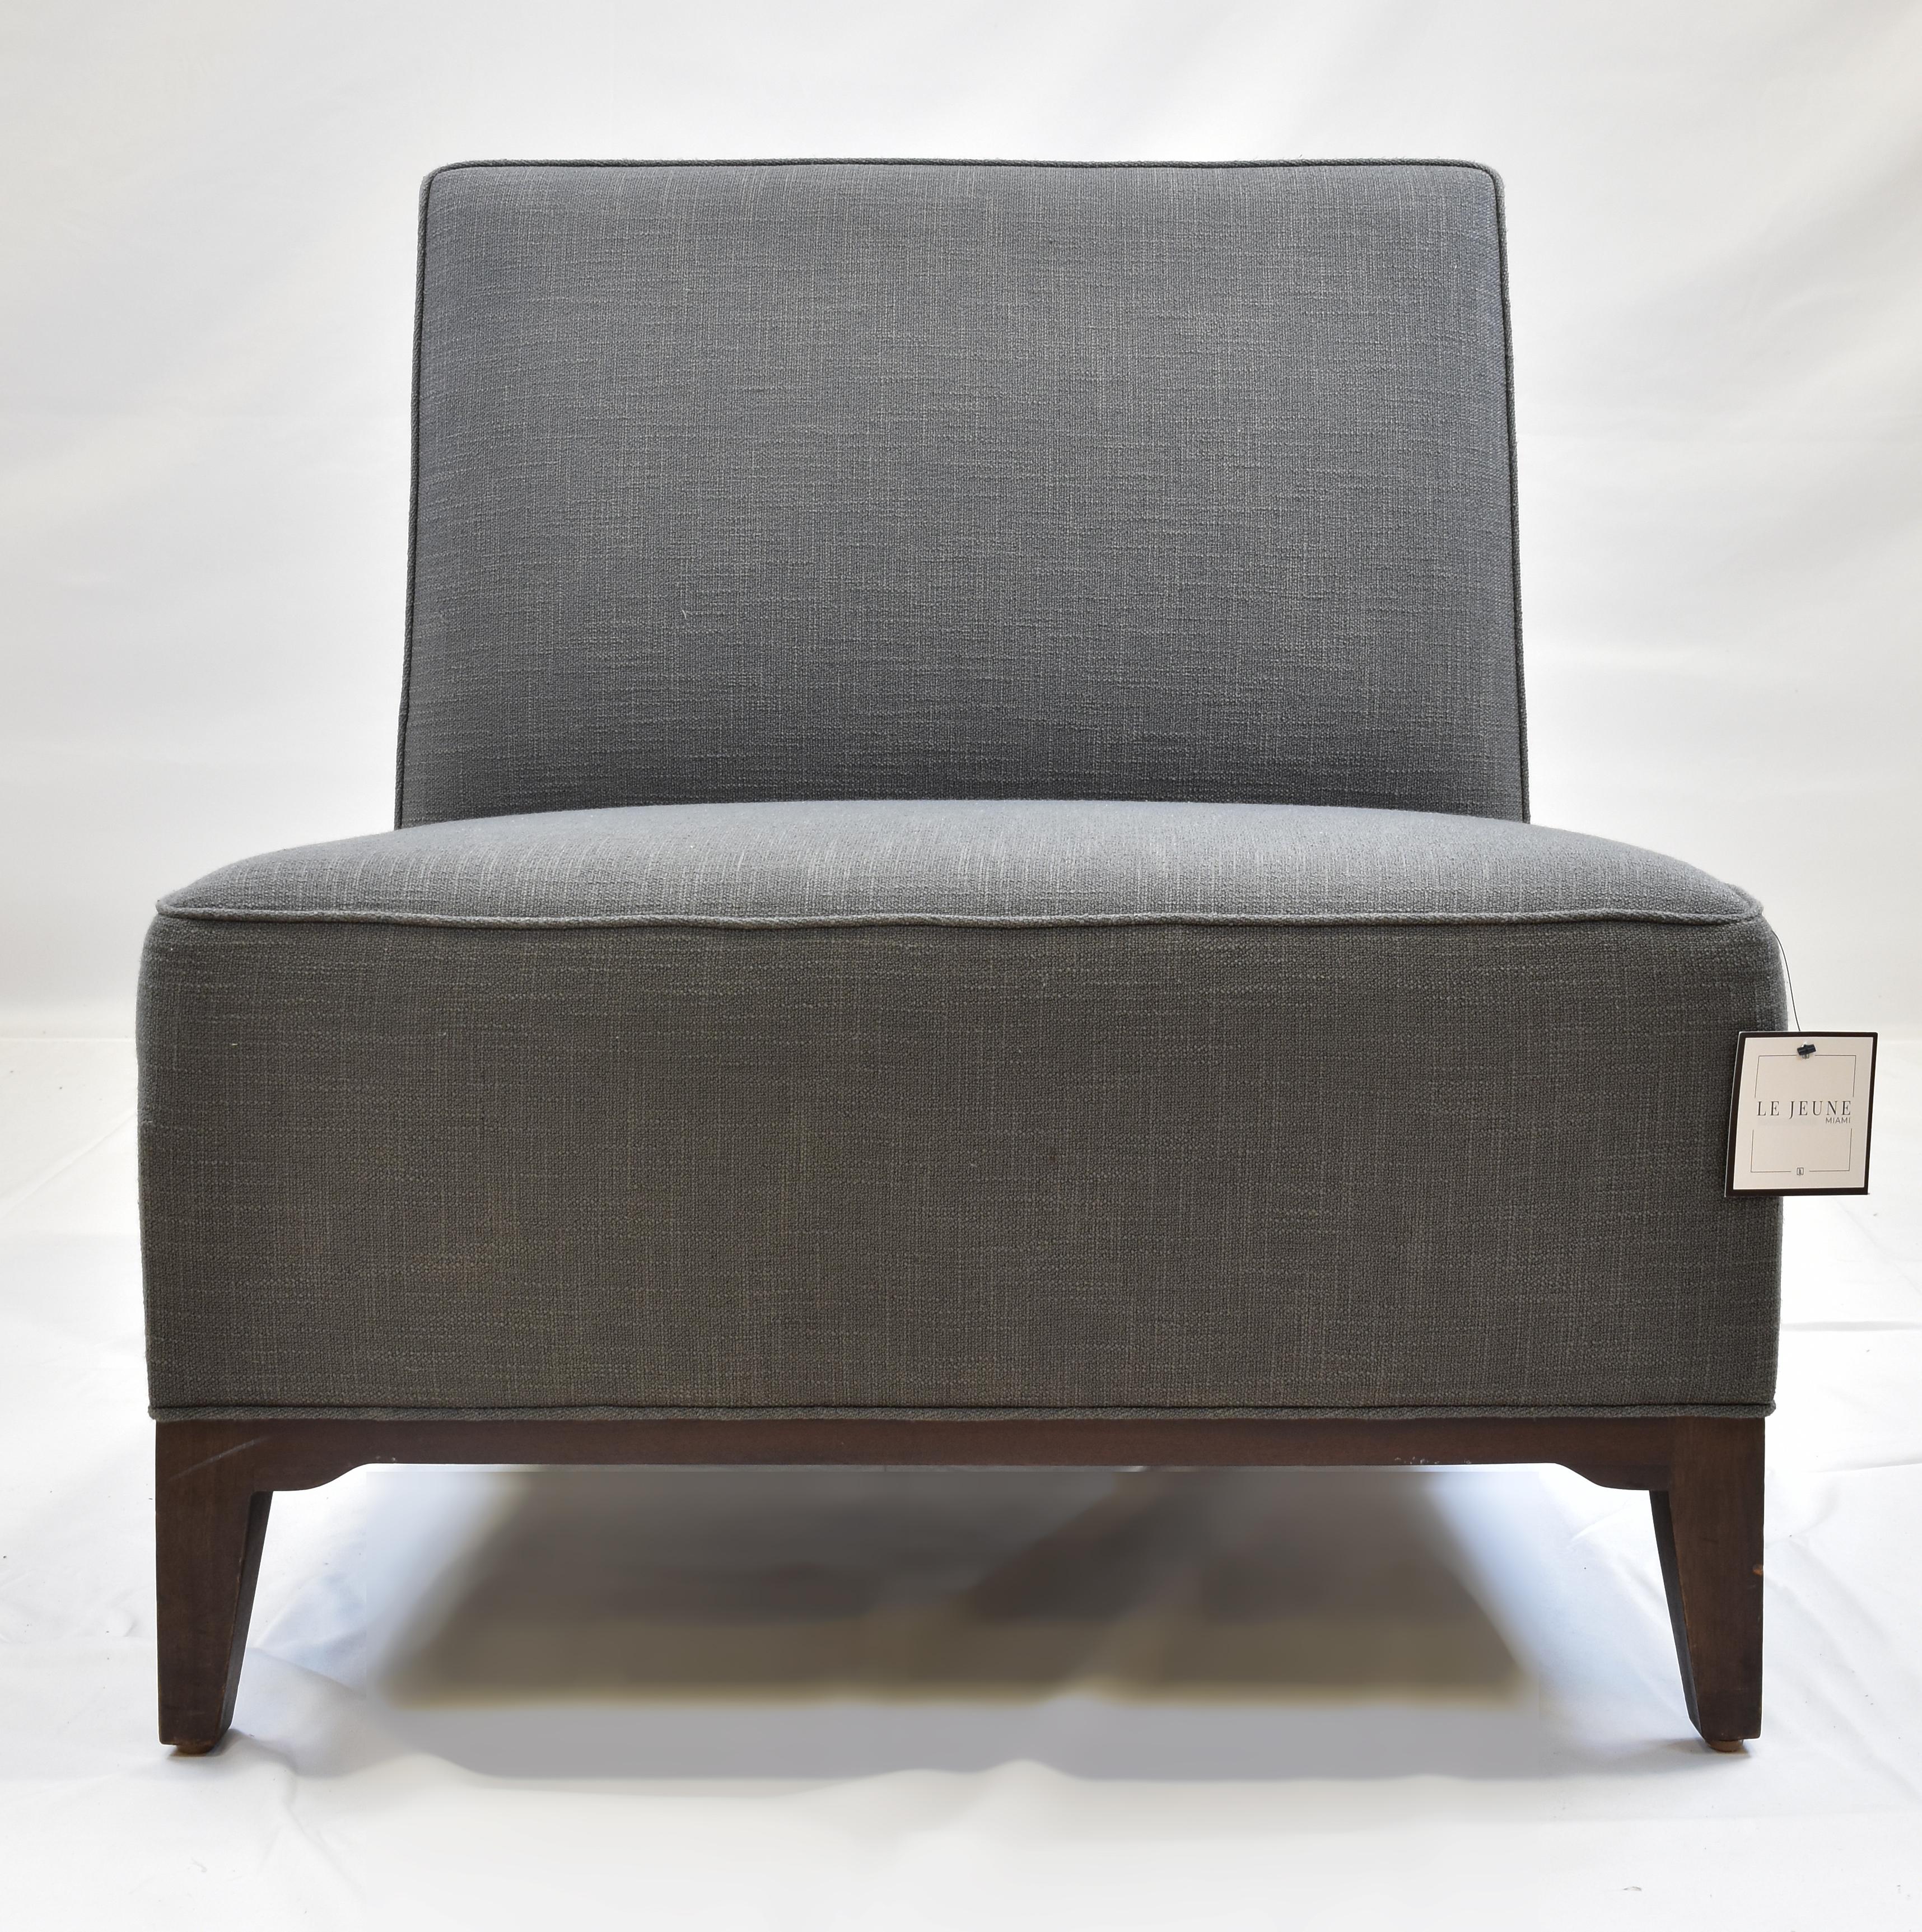 Le Jeune gepolsterter Loft-Sessel ohne Armlehne, Showroom-Modell

Zum Verkauf angeboten wird ein Le Jeune Upholstery LOFT	C6.932 Pantoffelstuhl Showroom Modell. Diese	Der Pantoffelstuhl ist ein mittelgroßer Stuhl mit einer engen Sitzfläche und